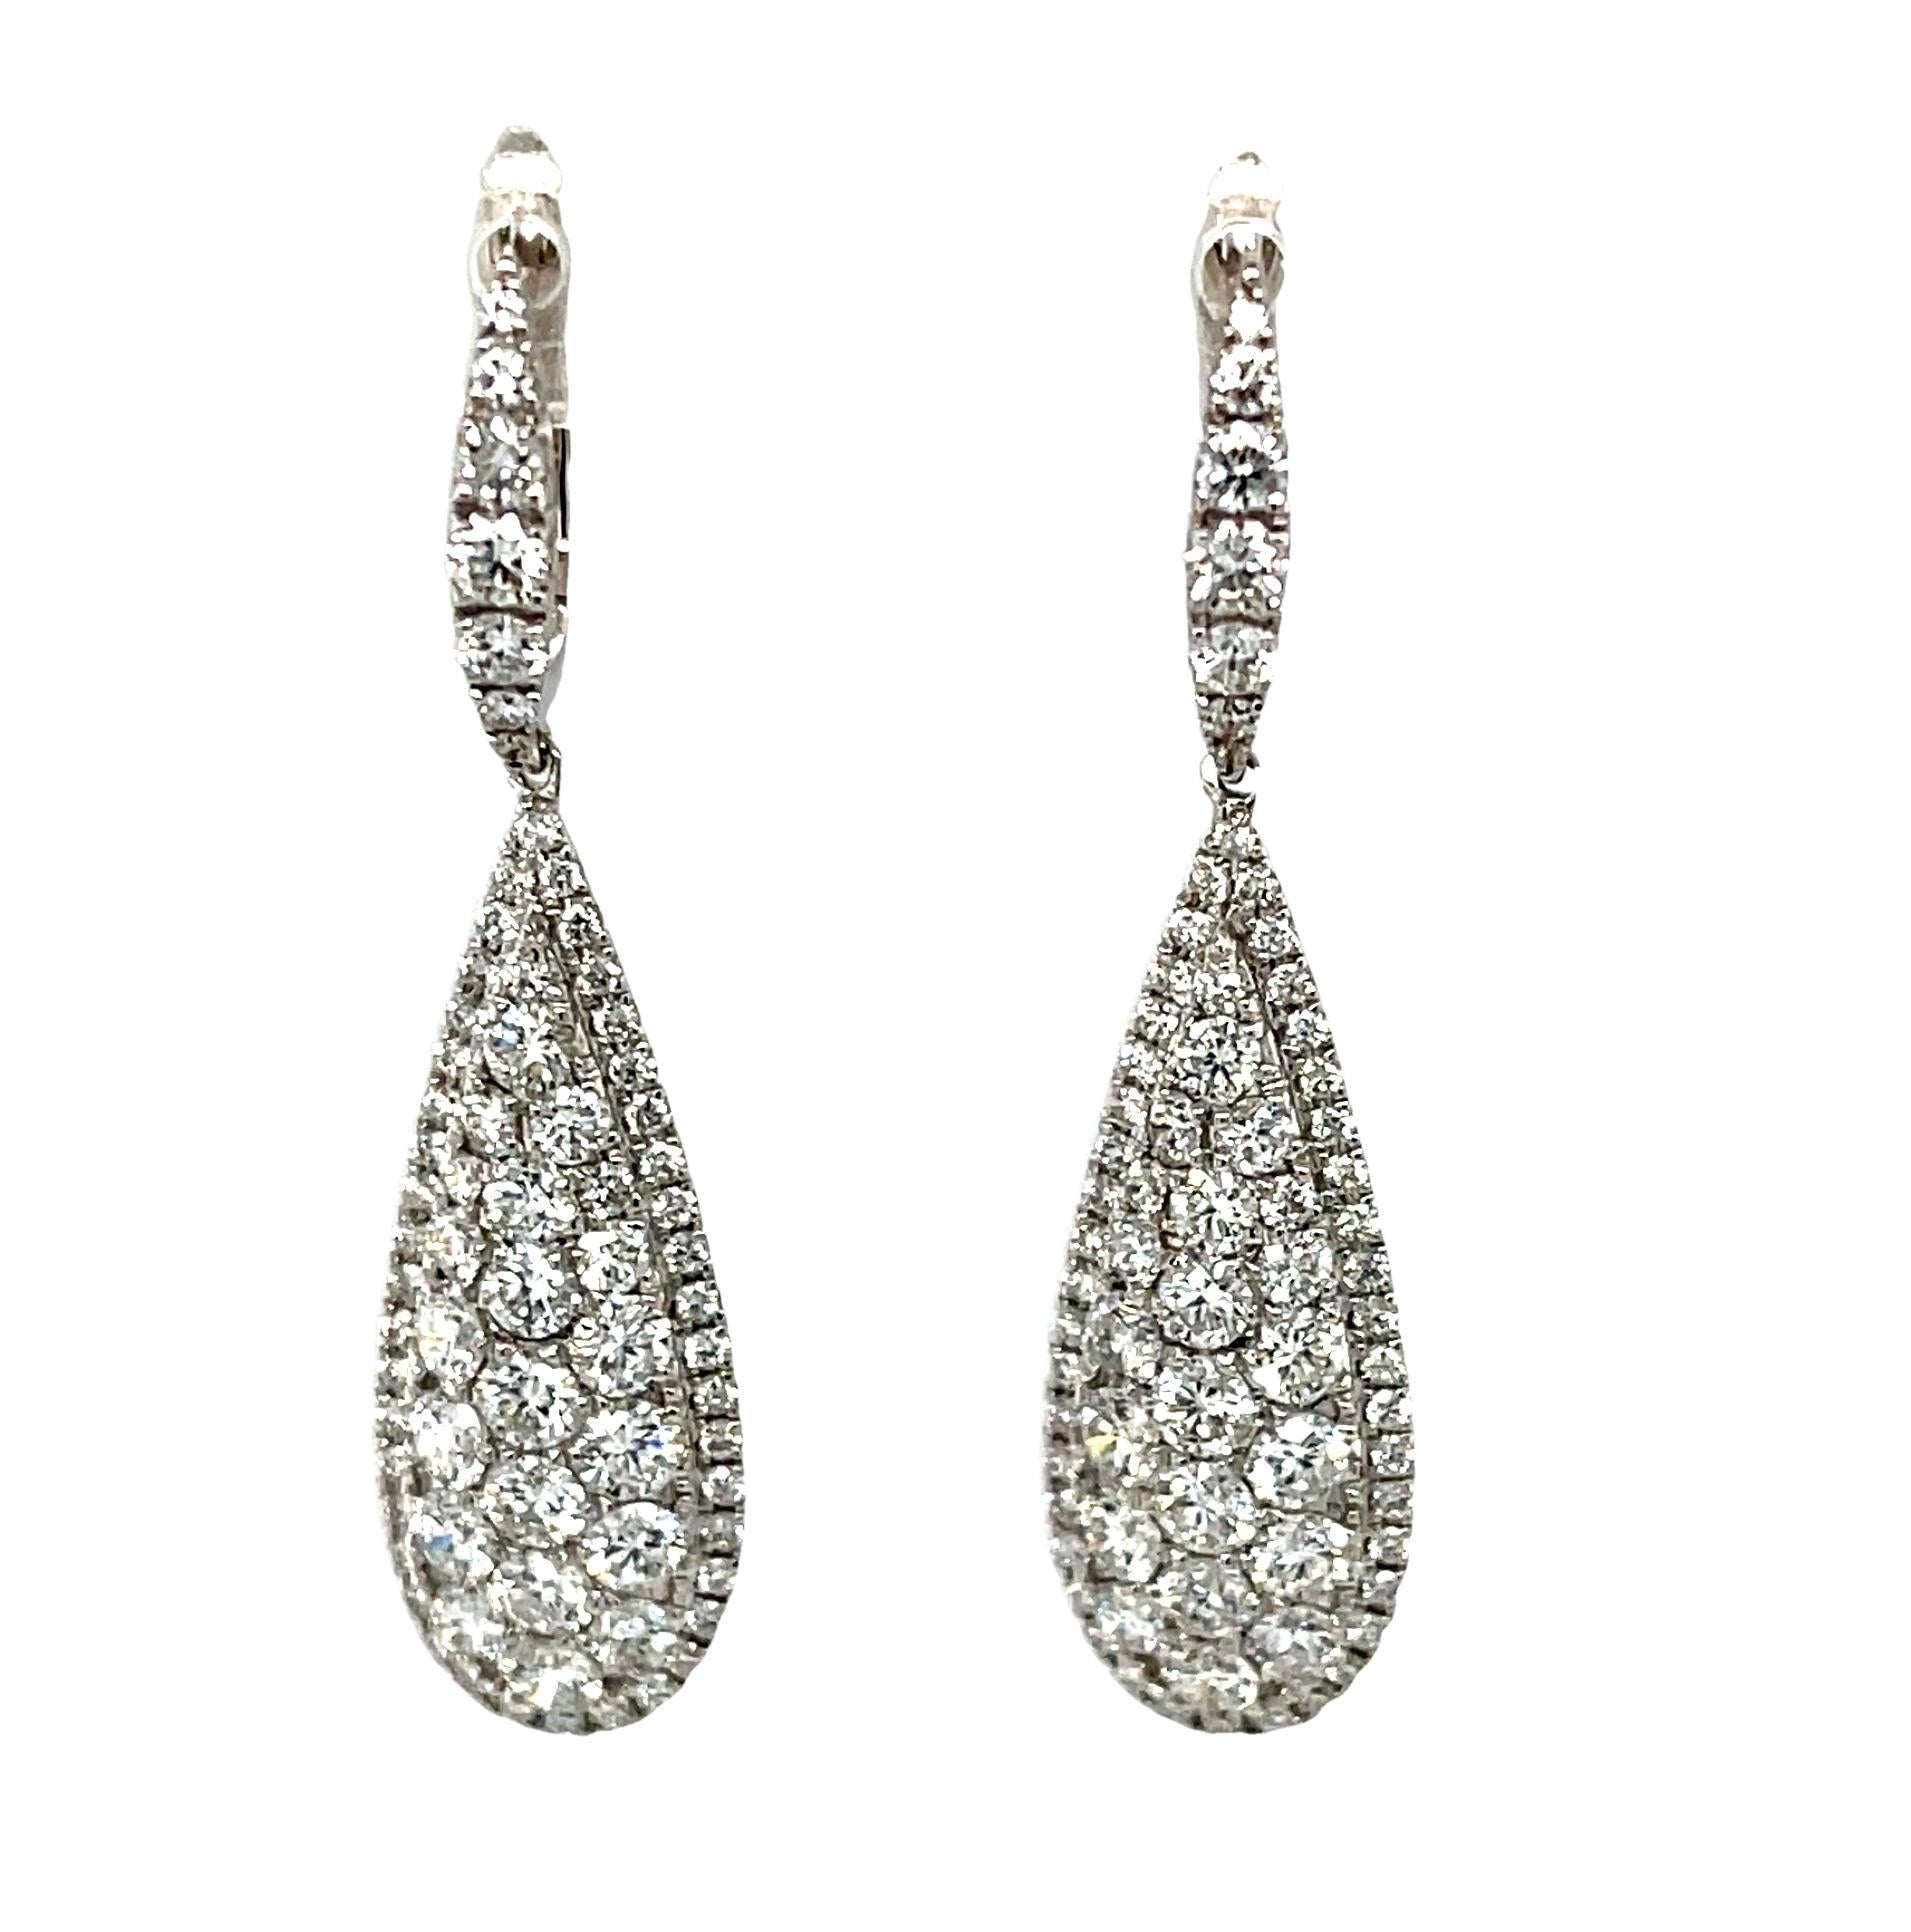 Diese eleganten Ohrringe mit Diamanten und Weißgold sind ein schöner Einstieg in eine edle Schmuckgarderobe oder eine Ergänzung dazu. Sie eignen sich sowohl für den Hochzeitstag als auch für ein ganzes Leben voller besonderer Ereignisse. Funkelnde